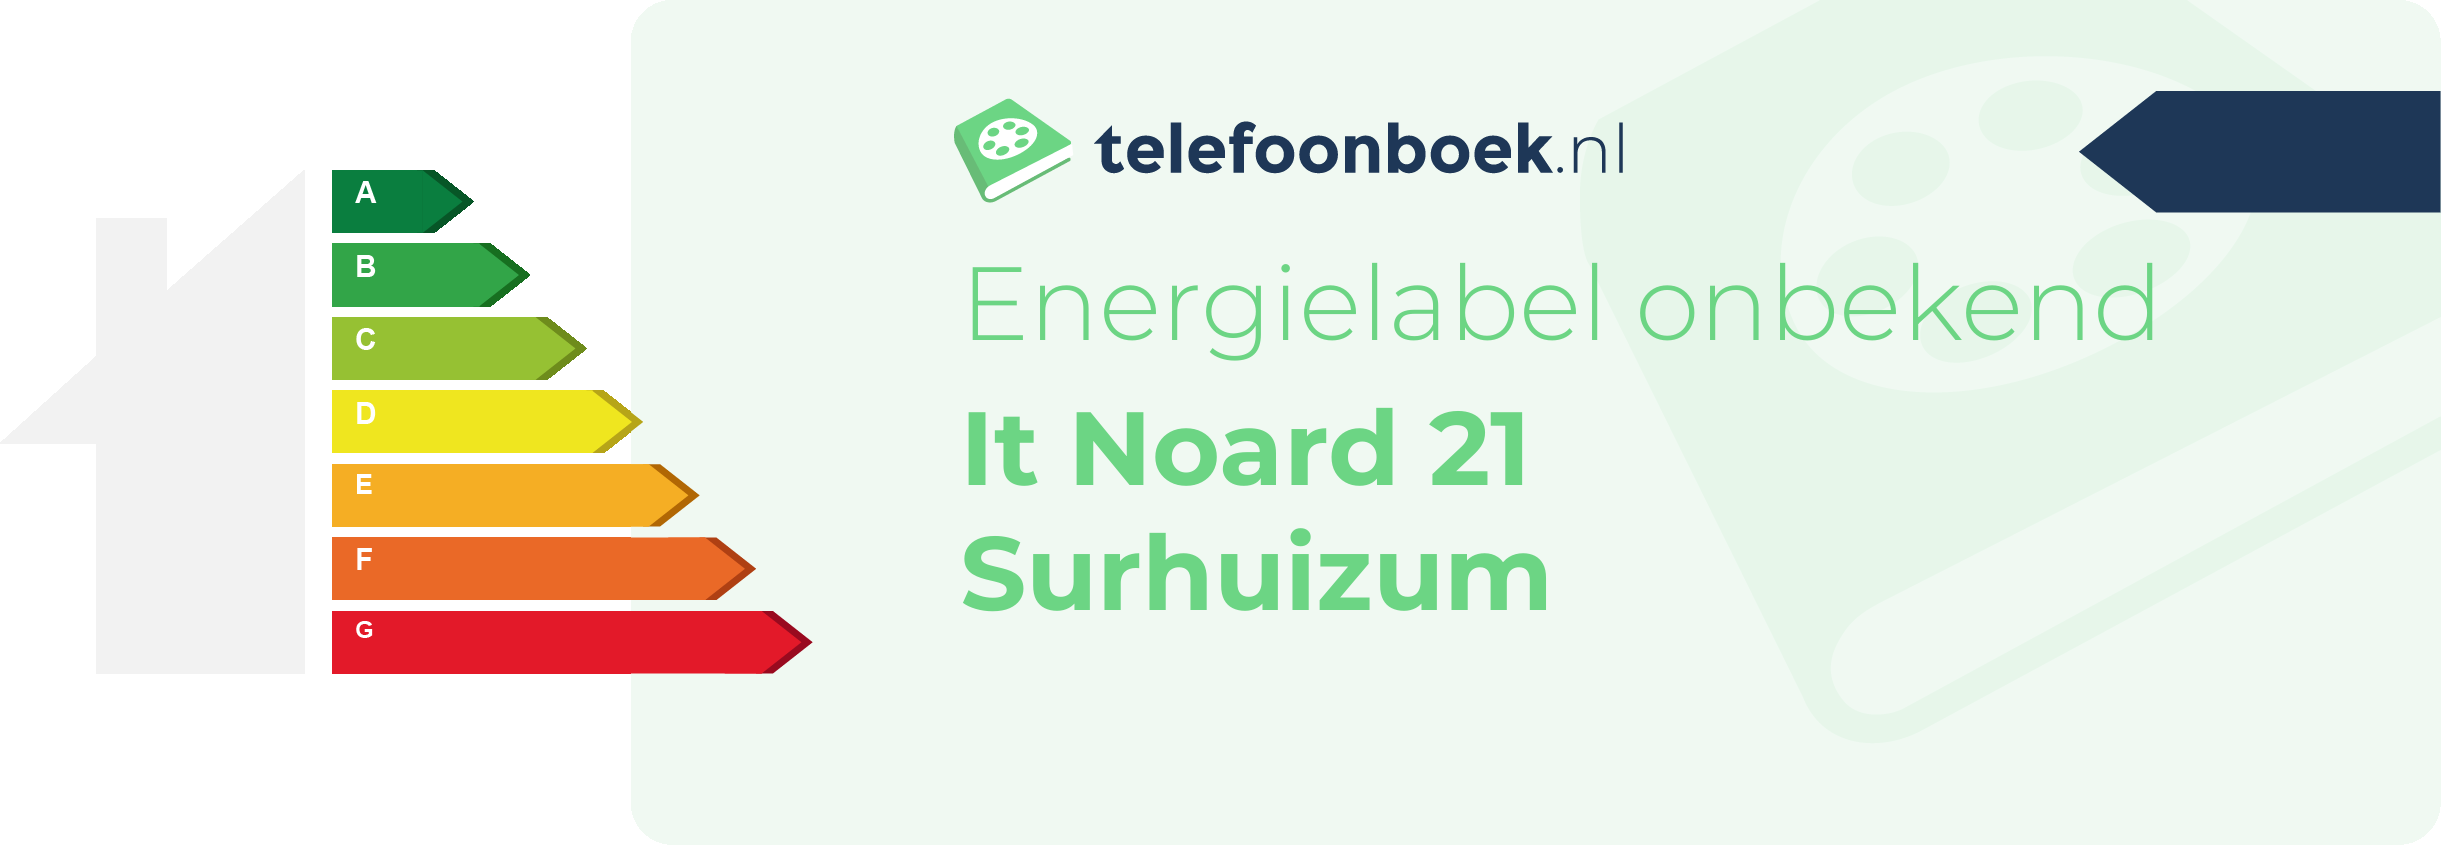 Energielabel It Noard 21 Surhuizum